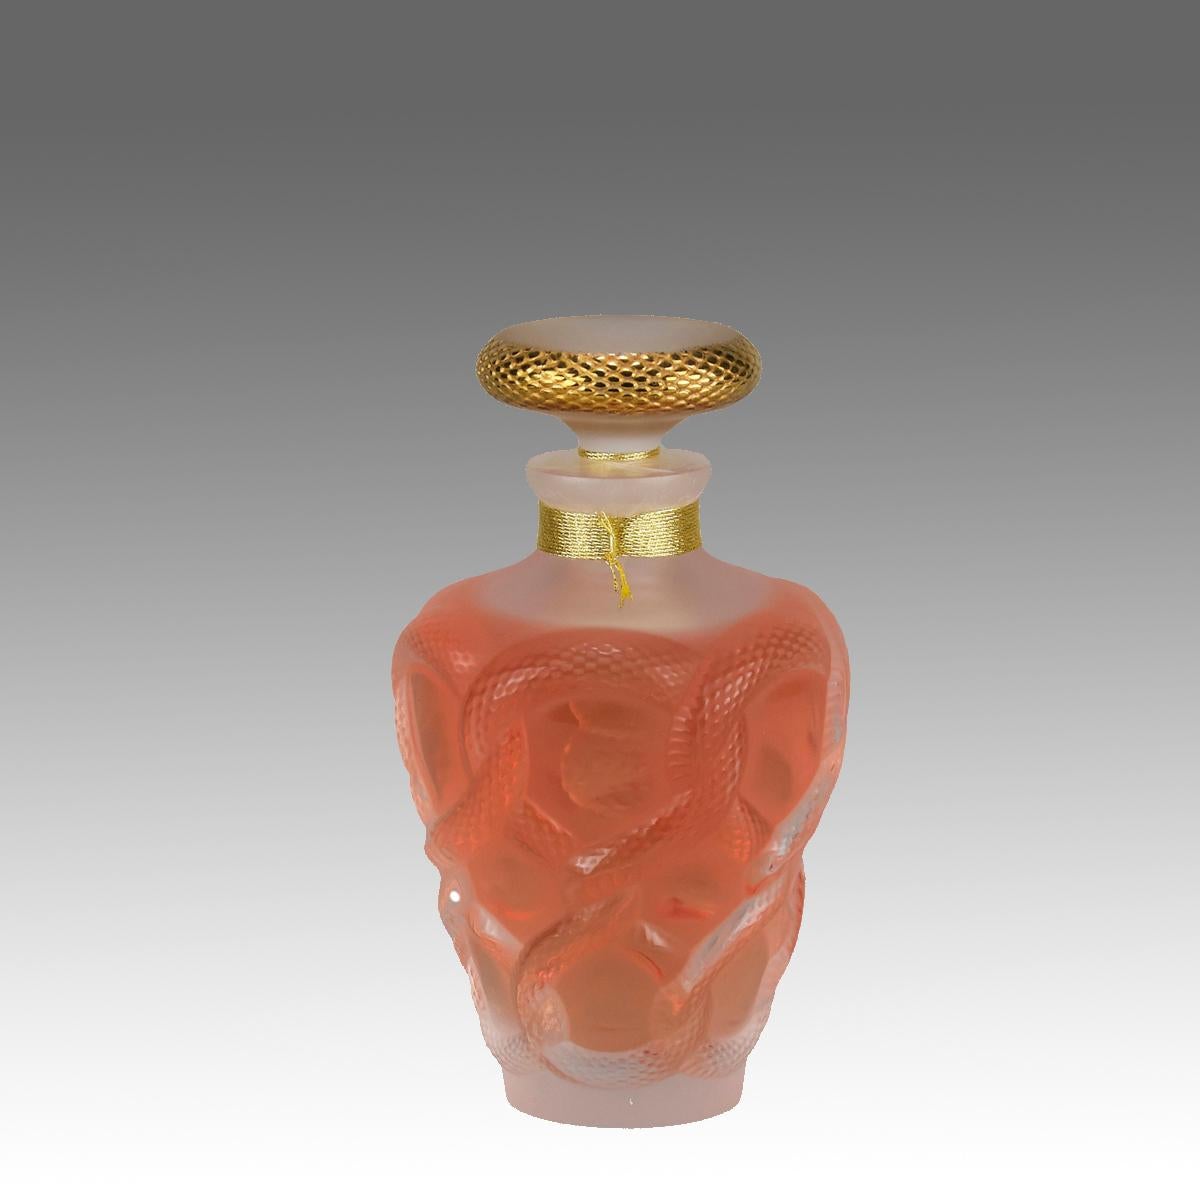 Un flacon de parfum en édition limitée en verre clair et givré, le corps en verre clair contenant le parfum original Lalique décoré de plusieurs corps de serpents en relief entrelacés ensemble autour de la circonférence avec de fins détails, signé